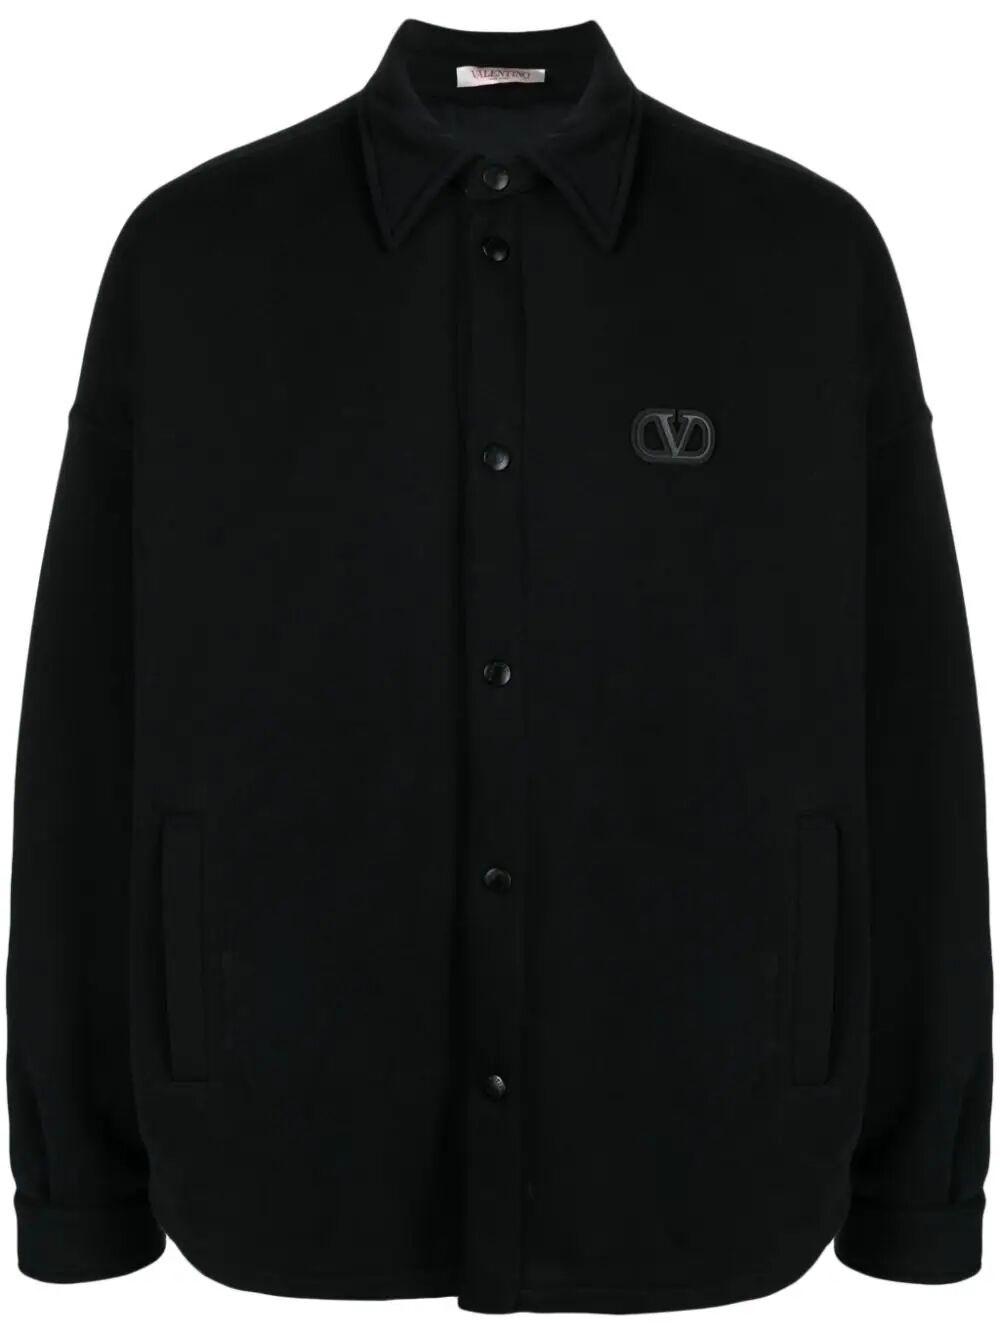 `Toile Iconographe` Shirt Jacket - 1